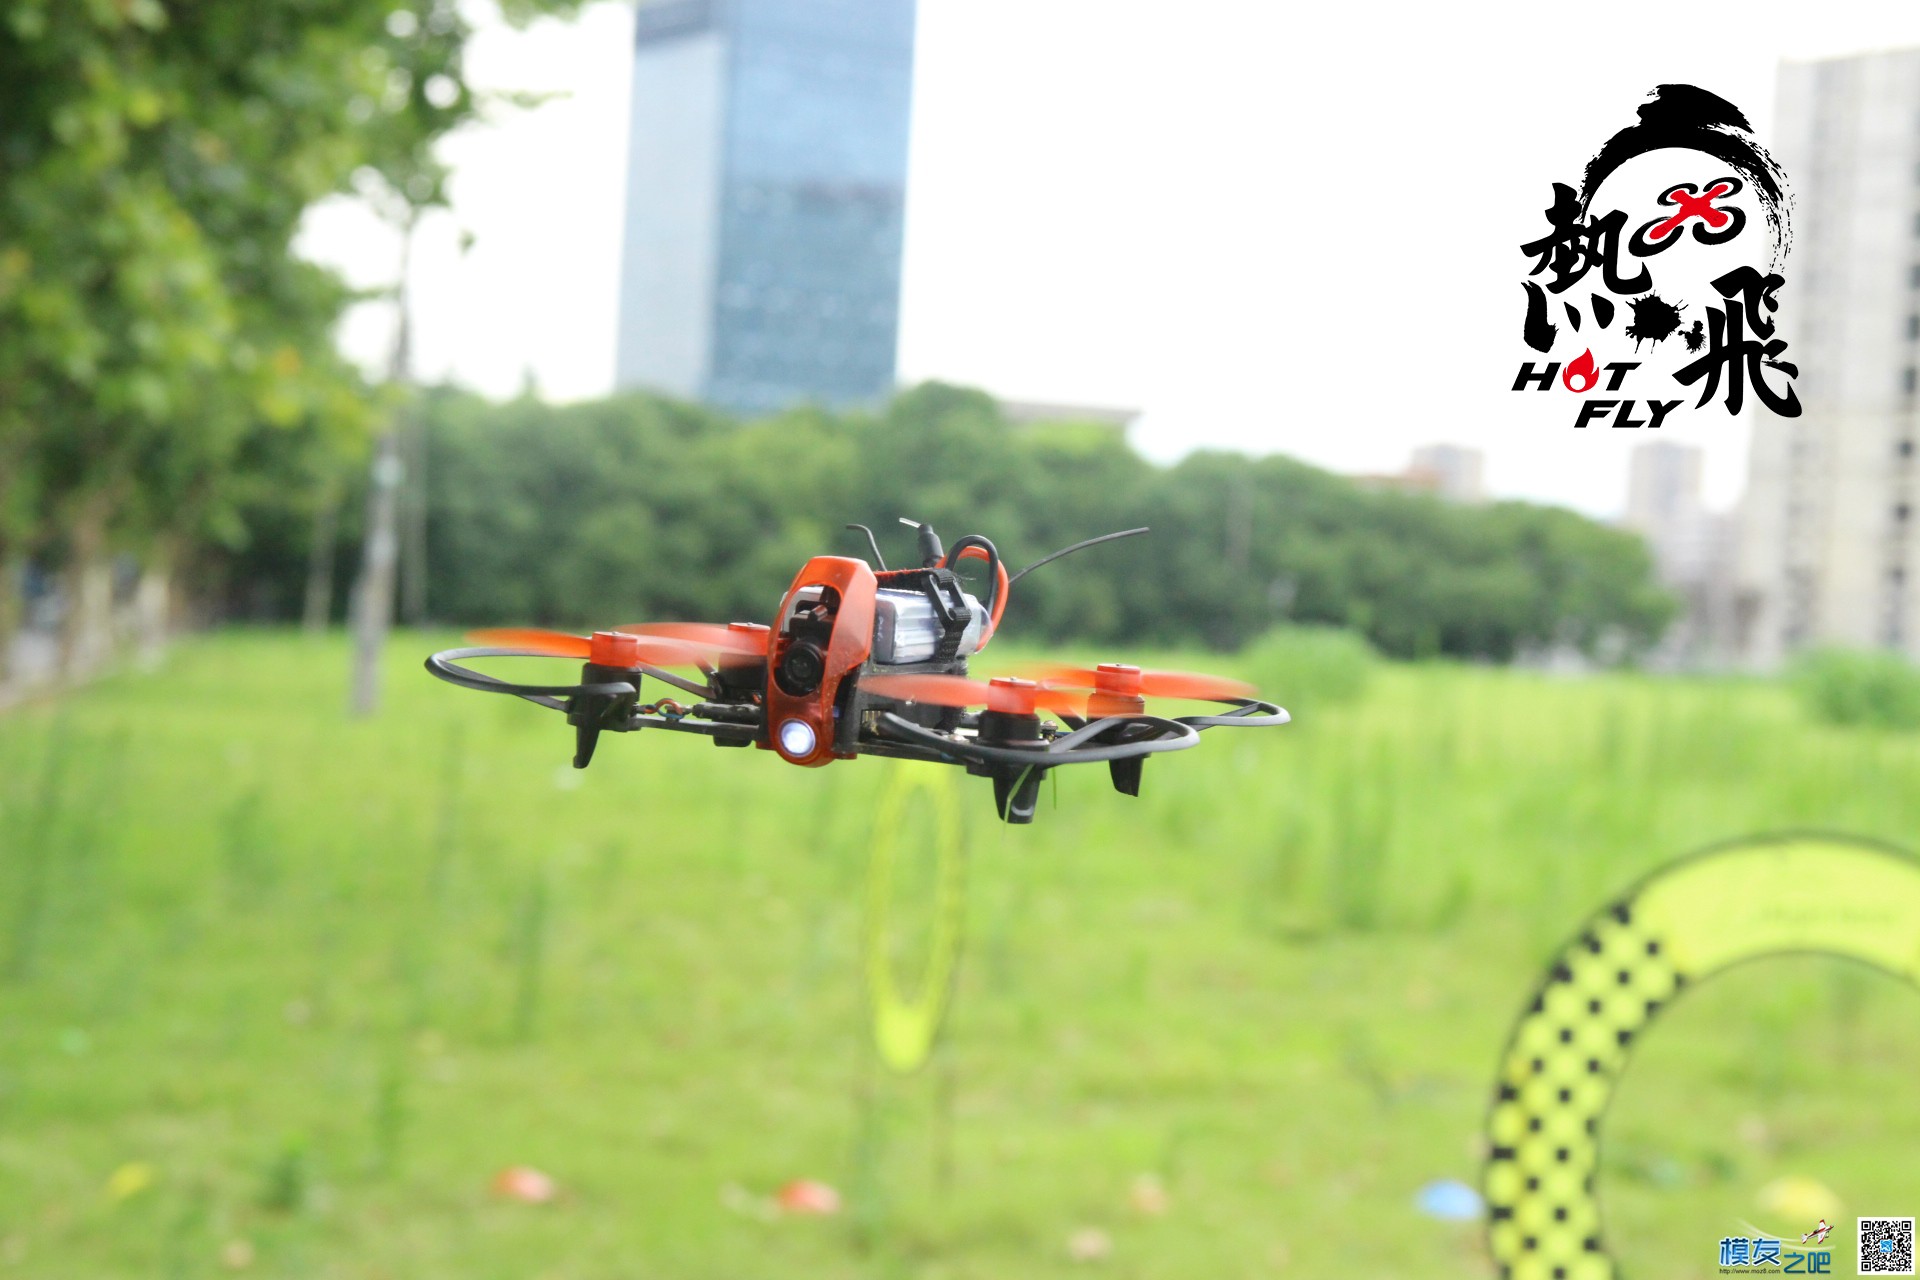 热飞视频+图片|7.9无人机总动员现场曝光各种最新机型 无人机 作者:杭州大碗 1614 